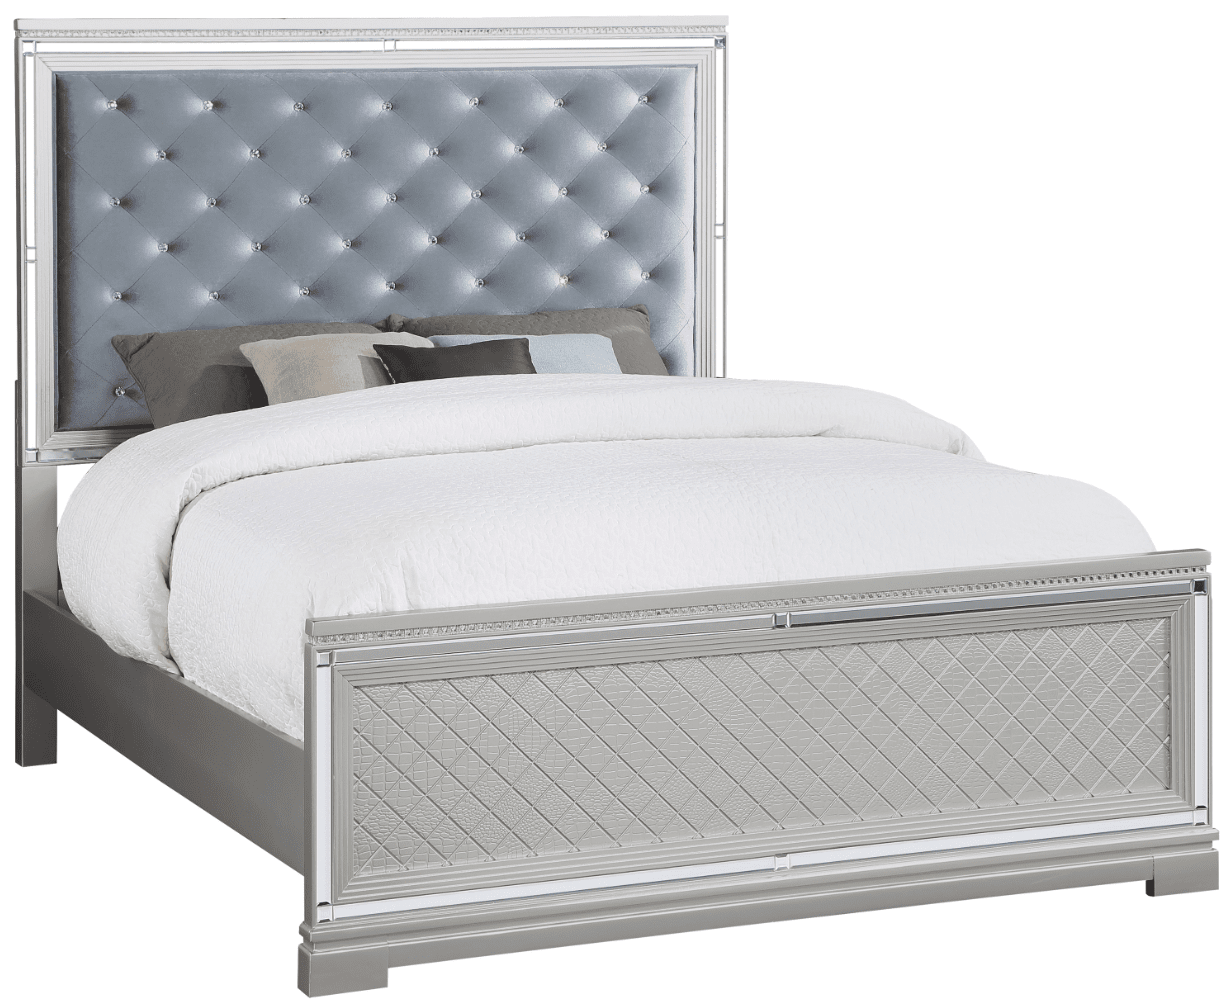 Eleanor Queen Size Glam Bedroom Set - Silver